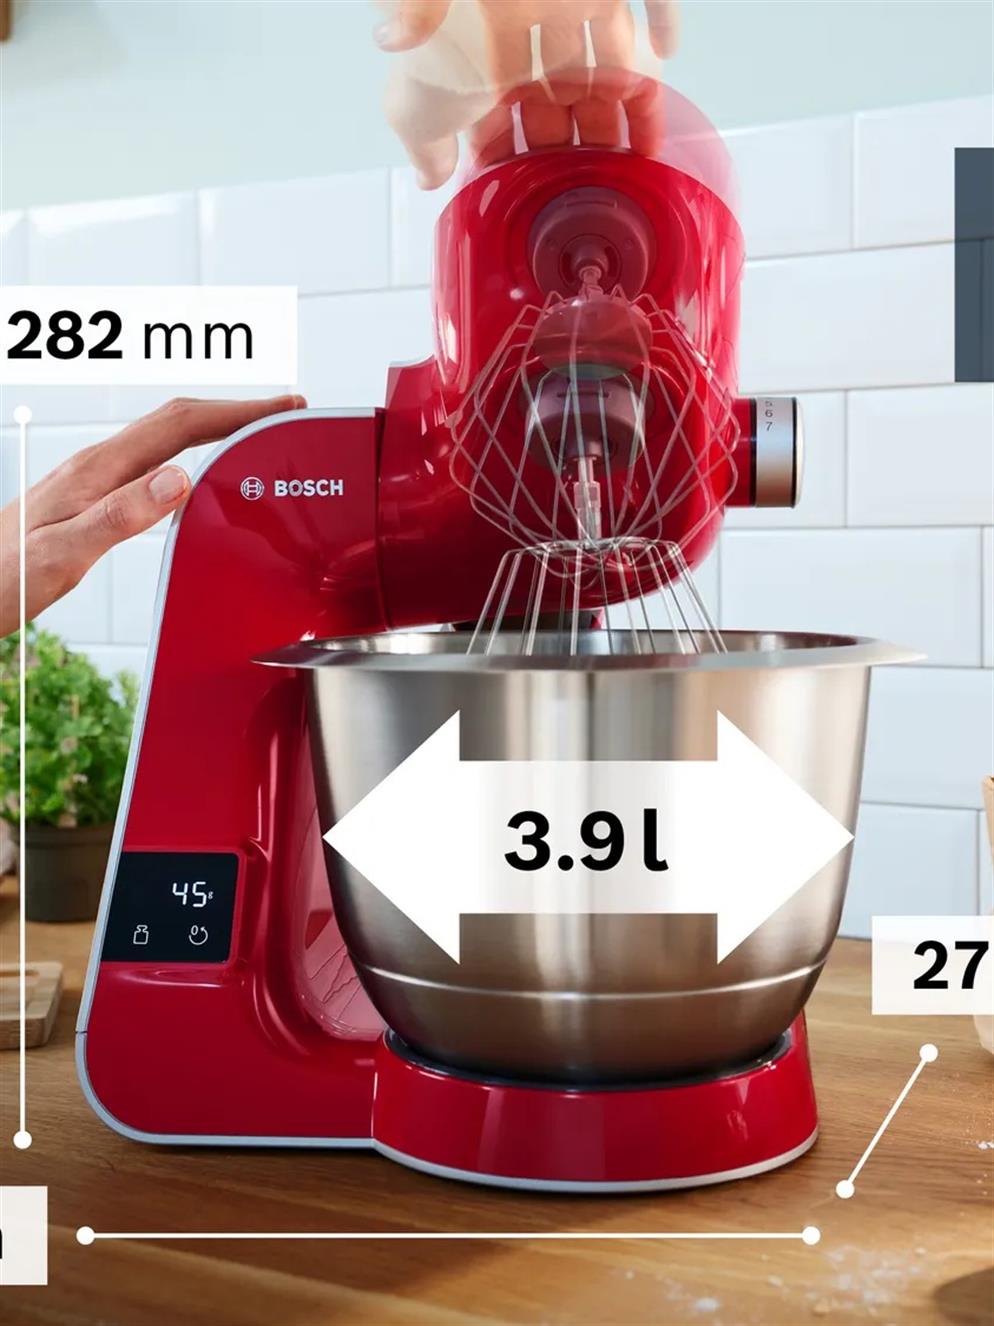 Bosch MUM5X720 Mutfak Robotu en uygun fiyatlar ile www.turkuaztrade.com'da.